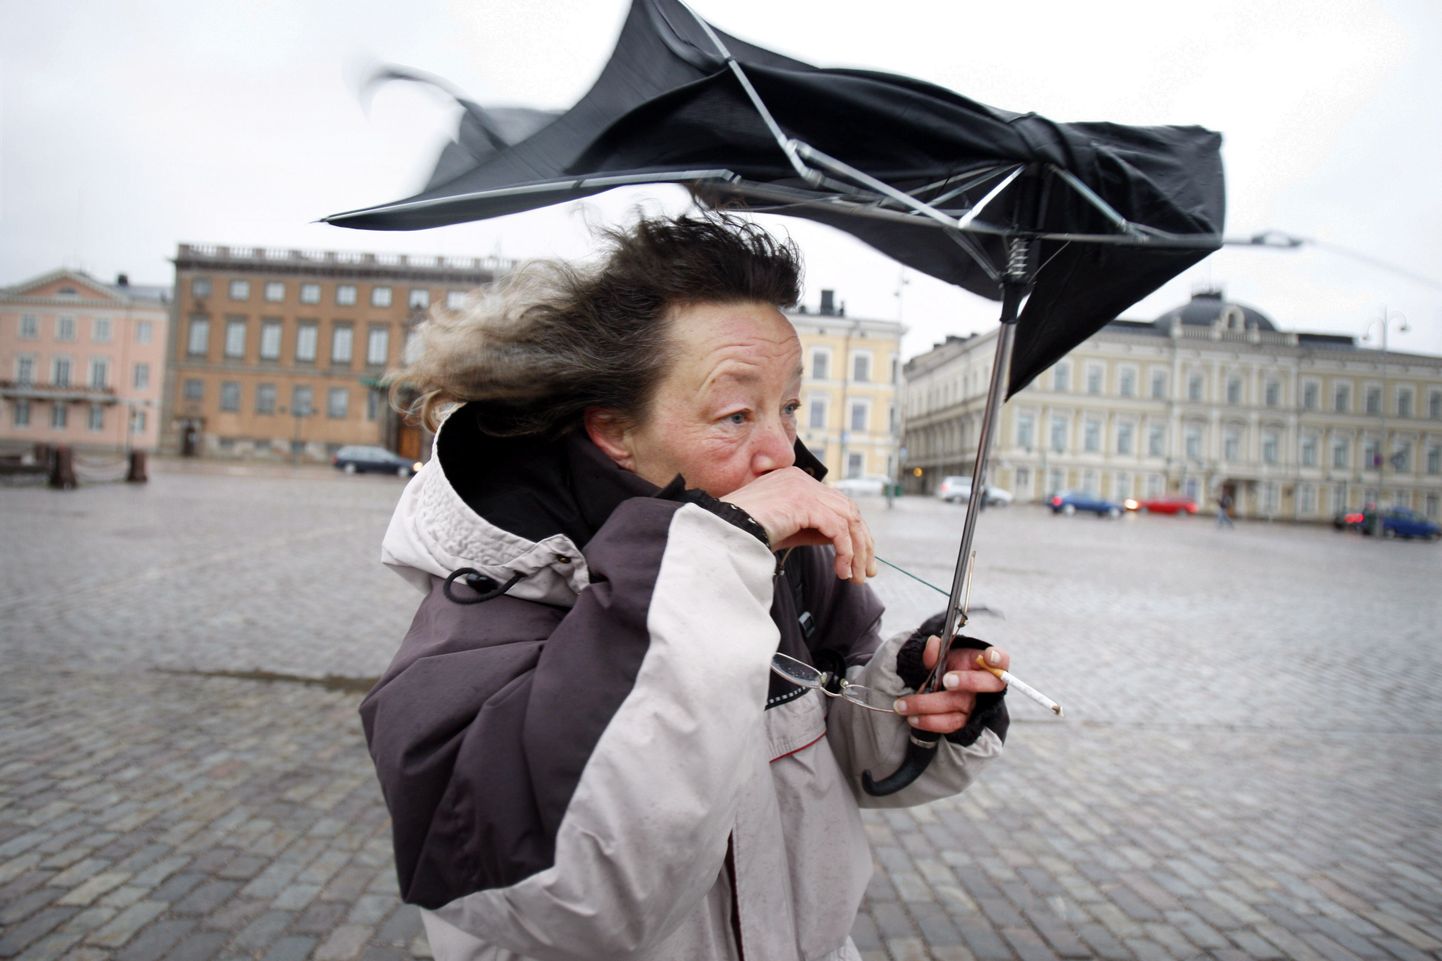 Helsingi turuplatsil tuulega võitlev naisterahvas.